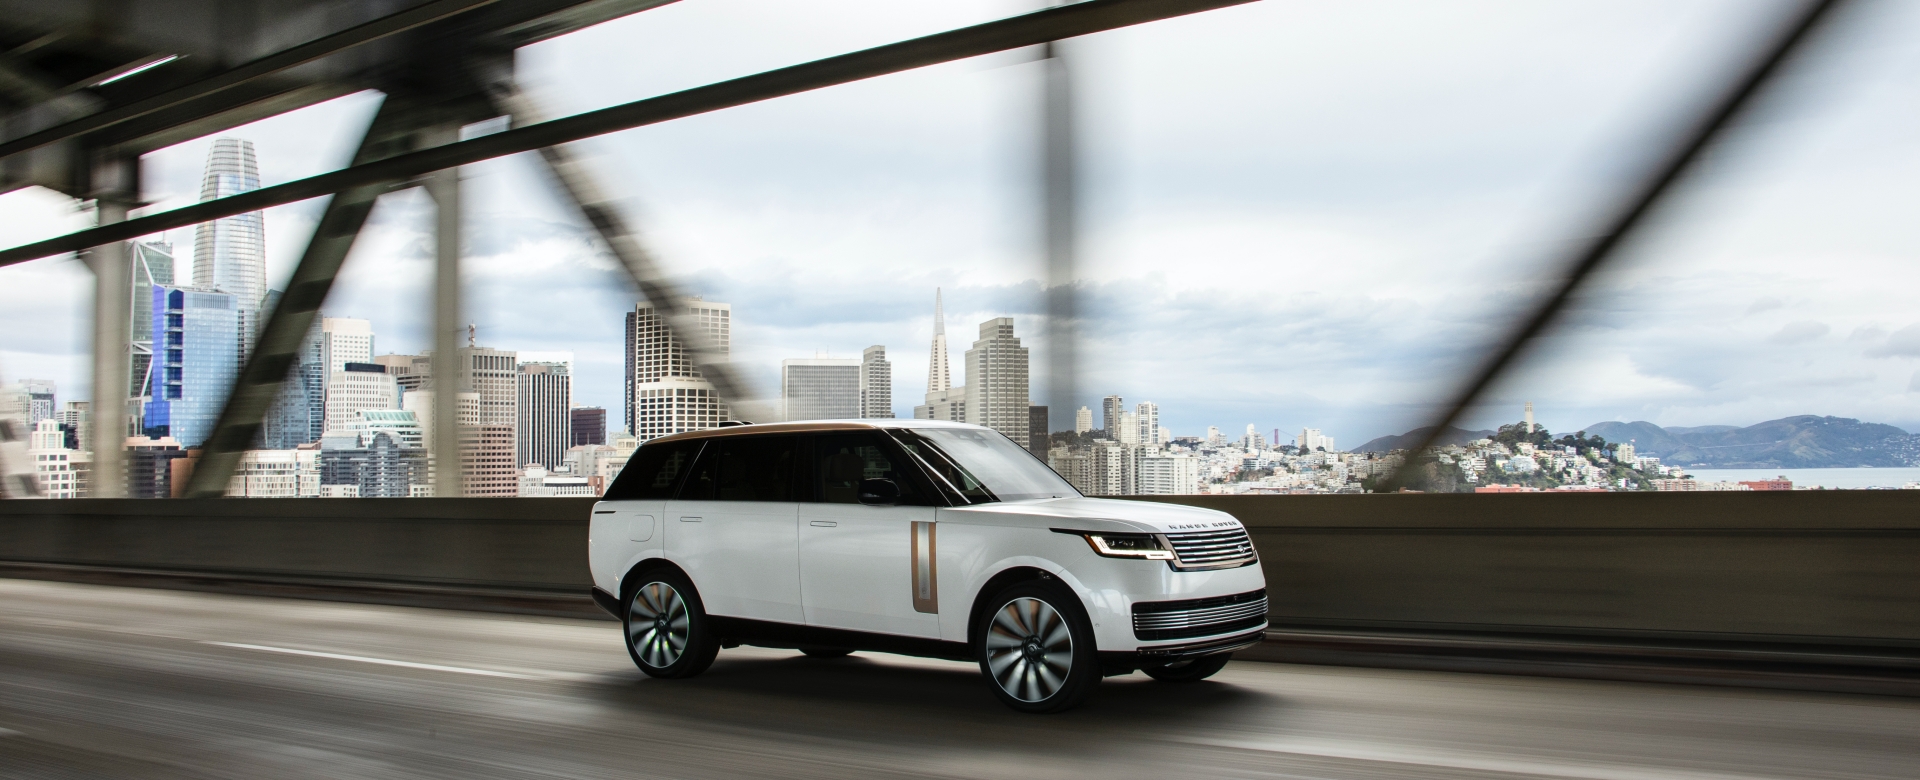 Jaguar Land Rover thúc đẩy tương lai điện hóa sang trọng